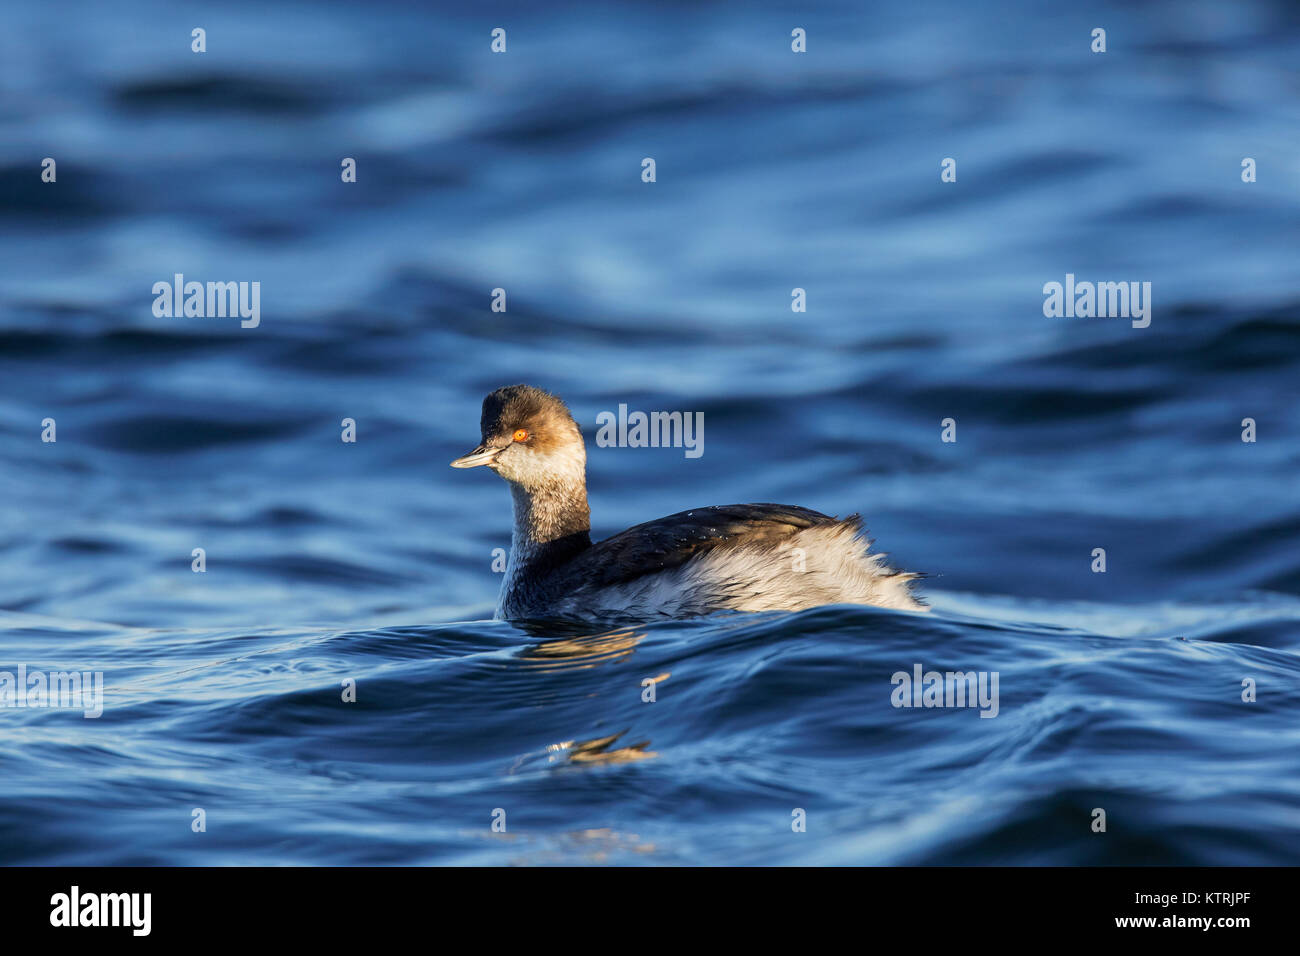 Black-necked grebe / eared grebe (Podiceps nigricollis) swimming in sea in winter plumage / non-breeding plumage Stock Photo